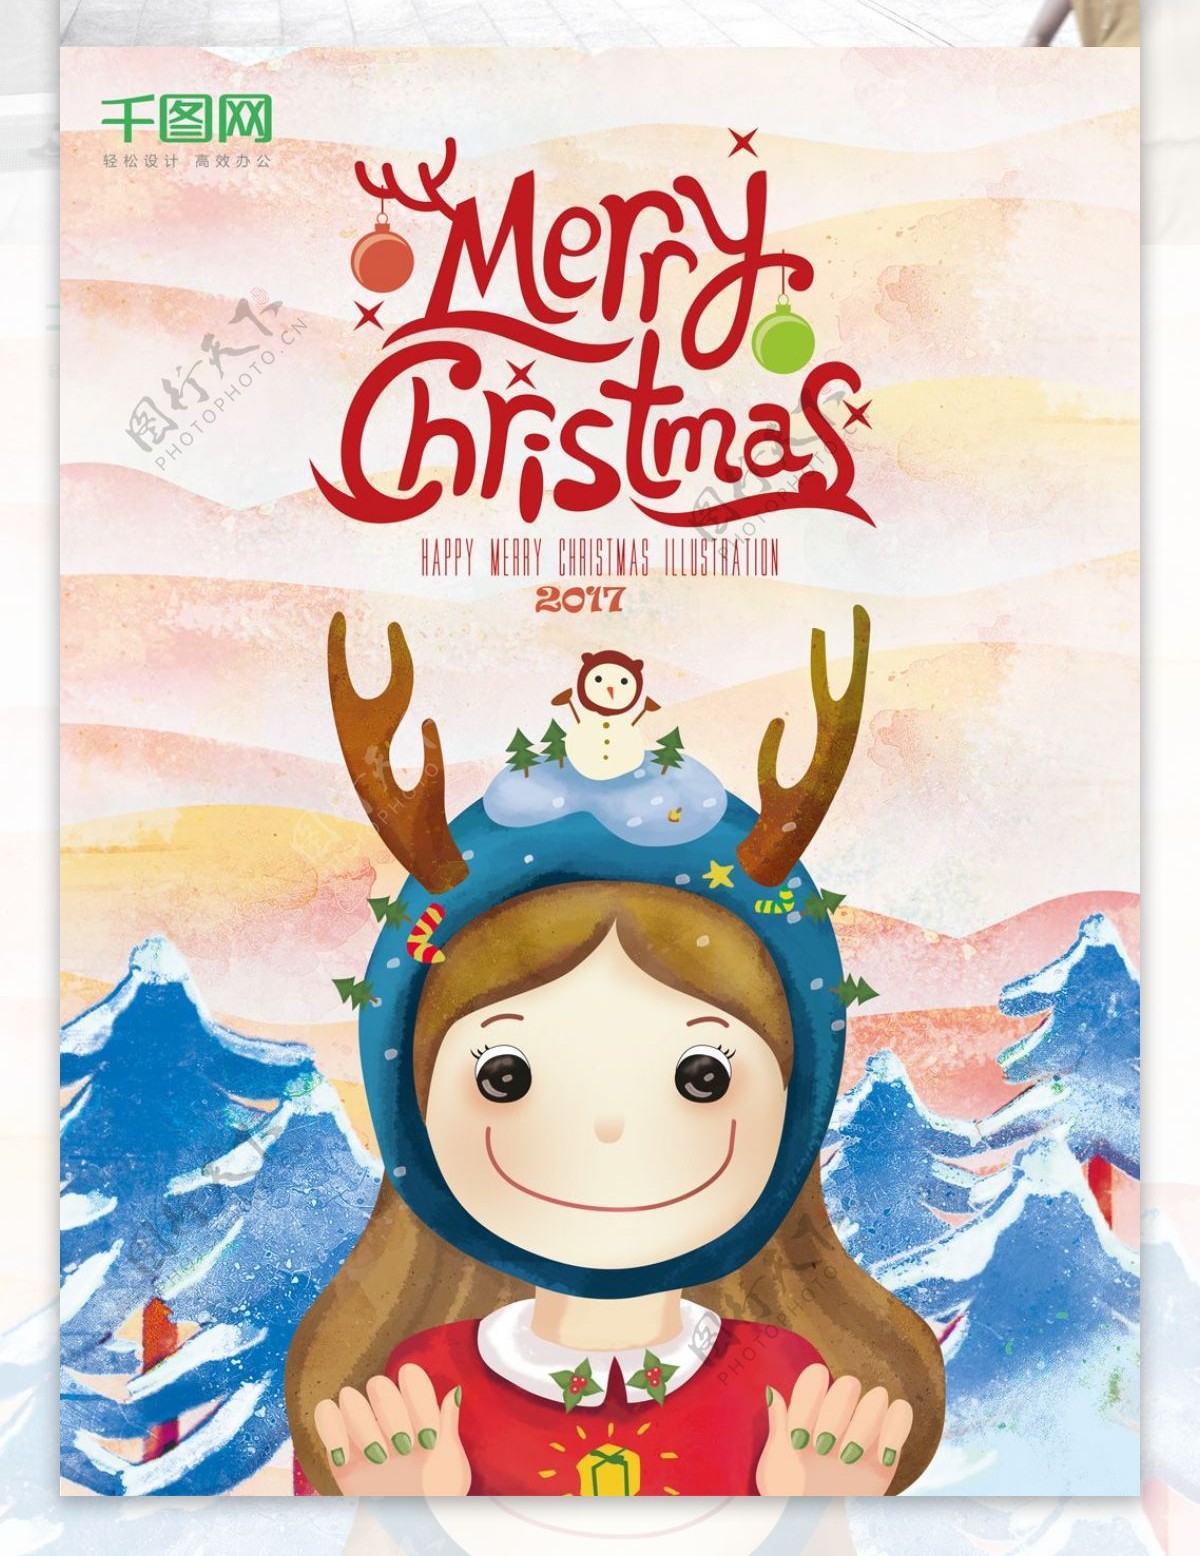 原创手绘插画彩色圣诞节海报